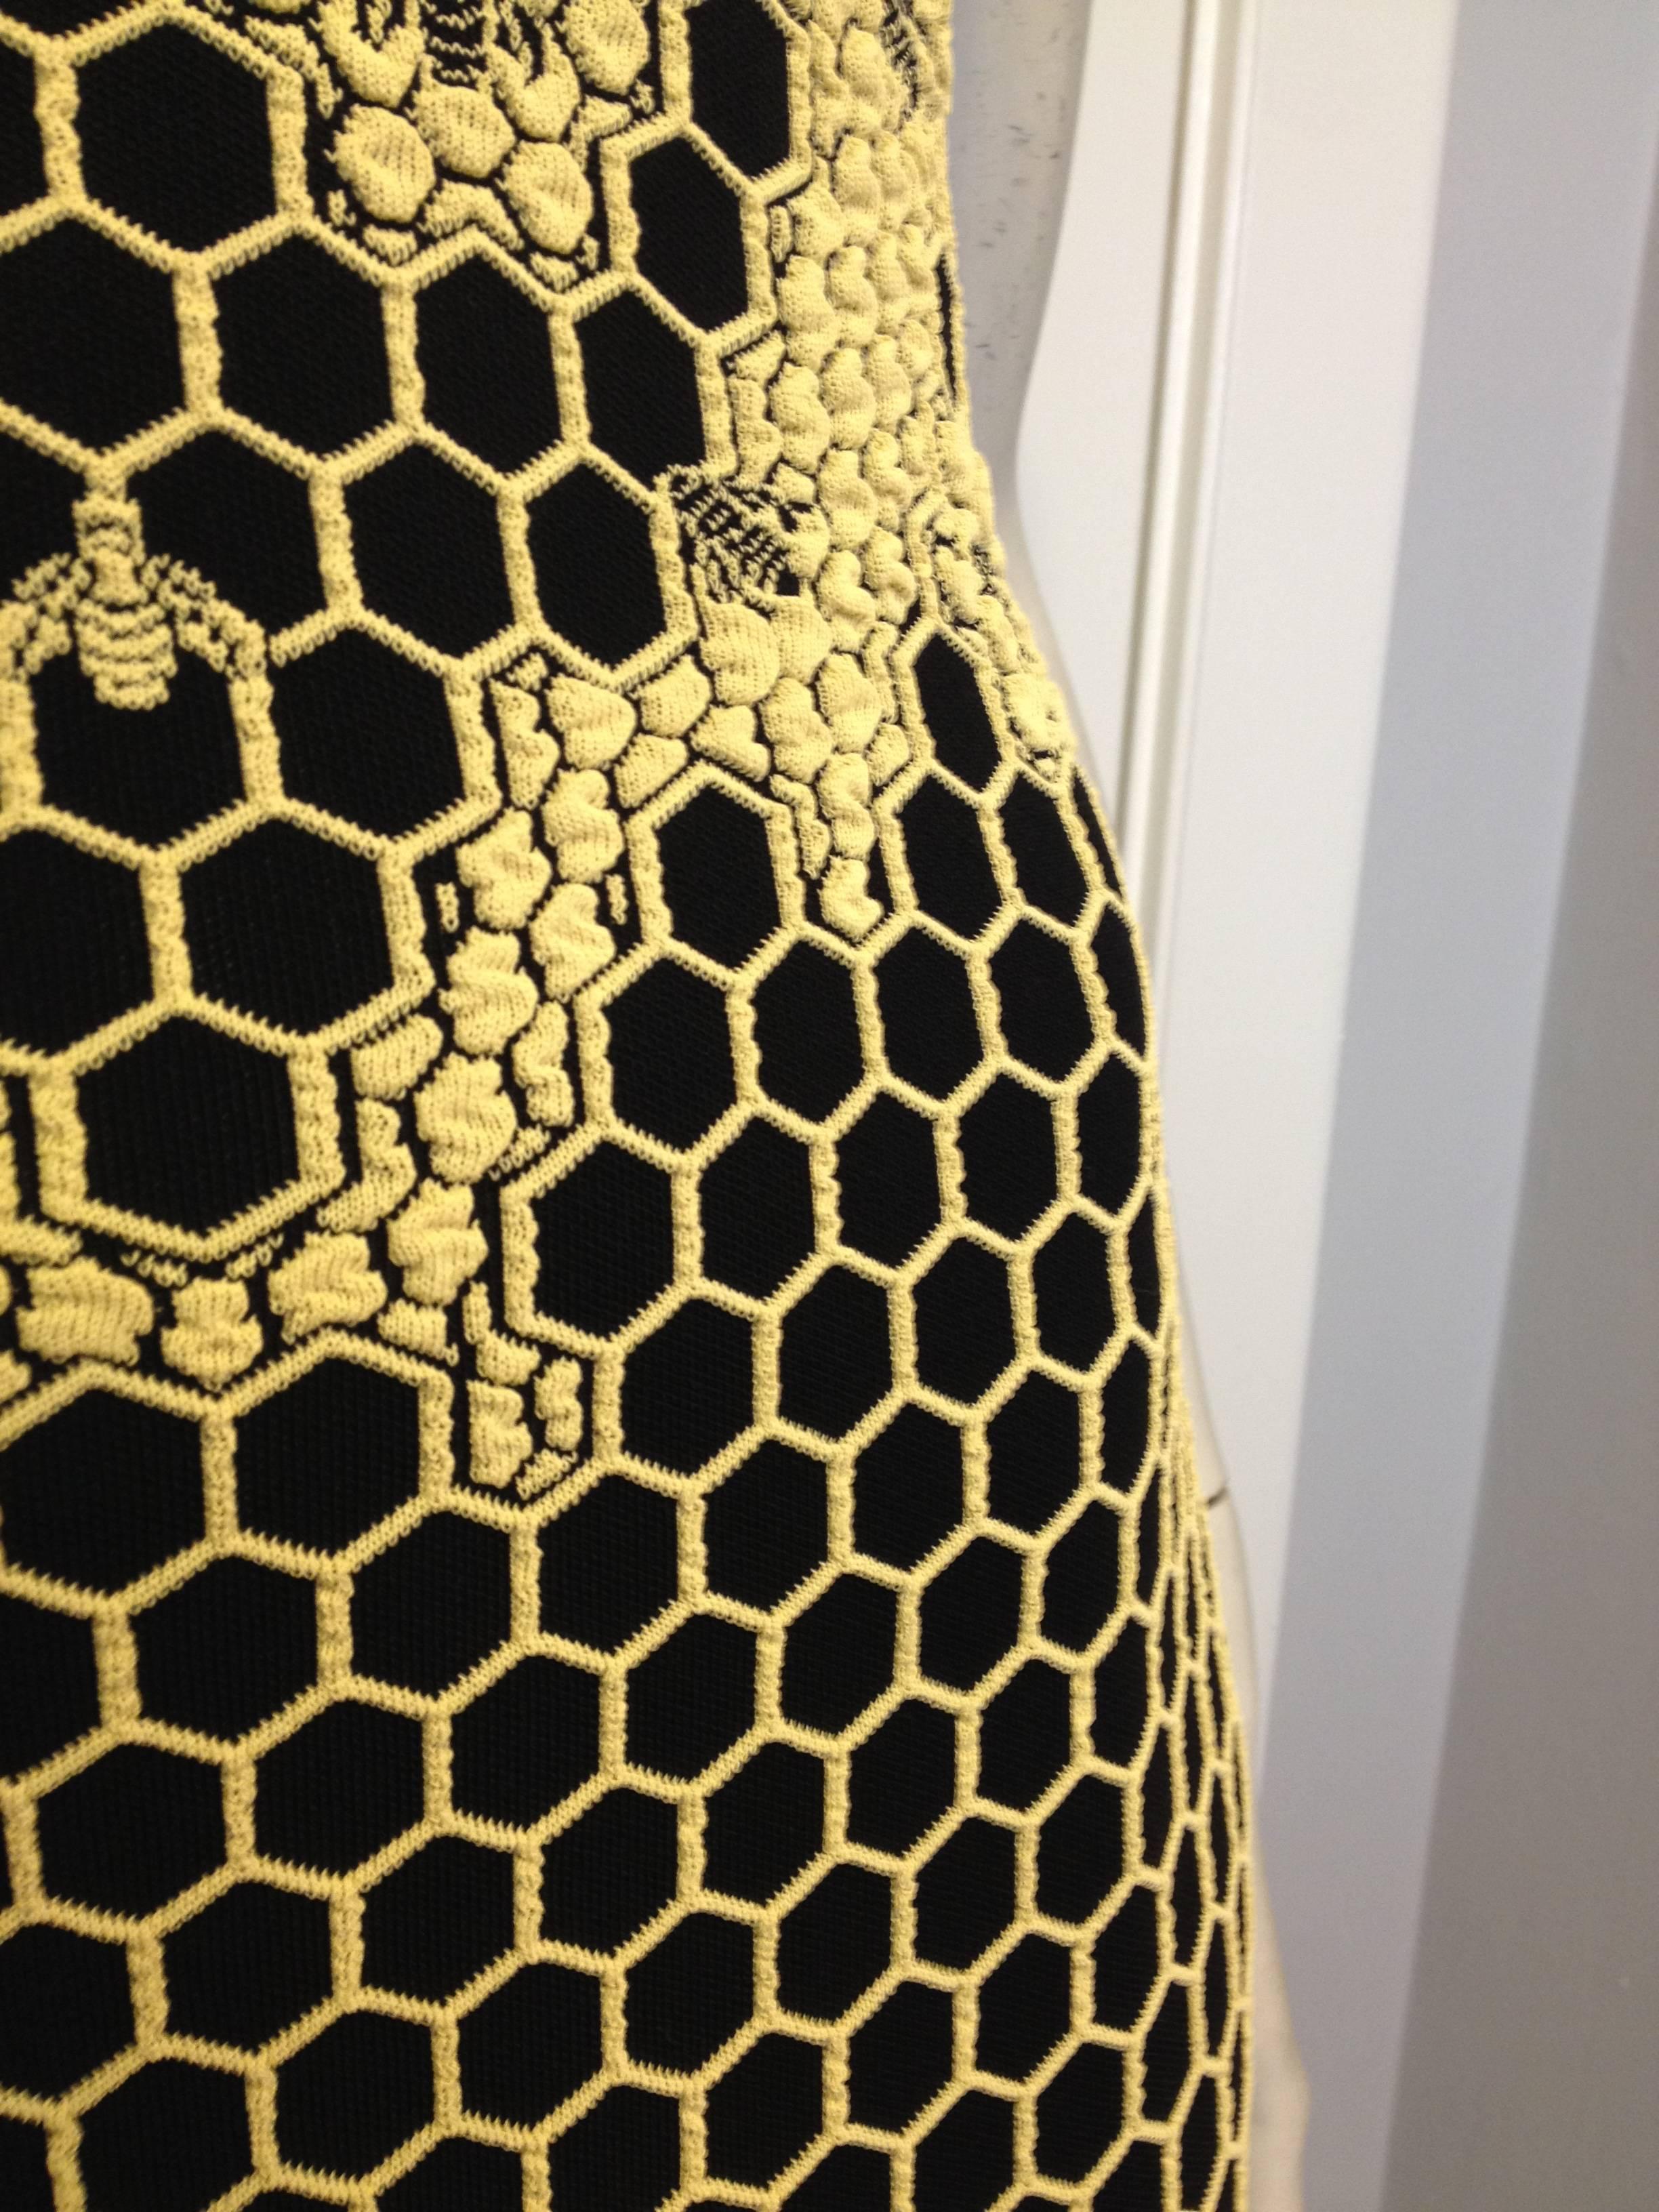 Alexander McQueen Yellow and Black Beehive Dress 1